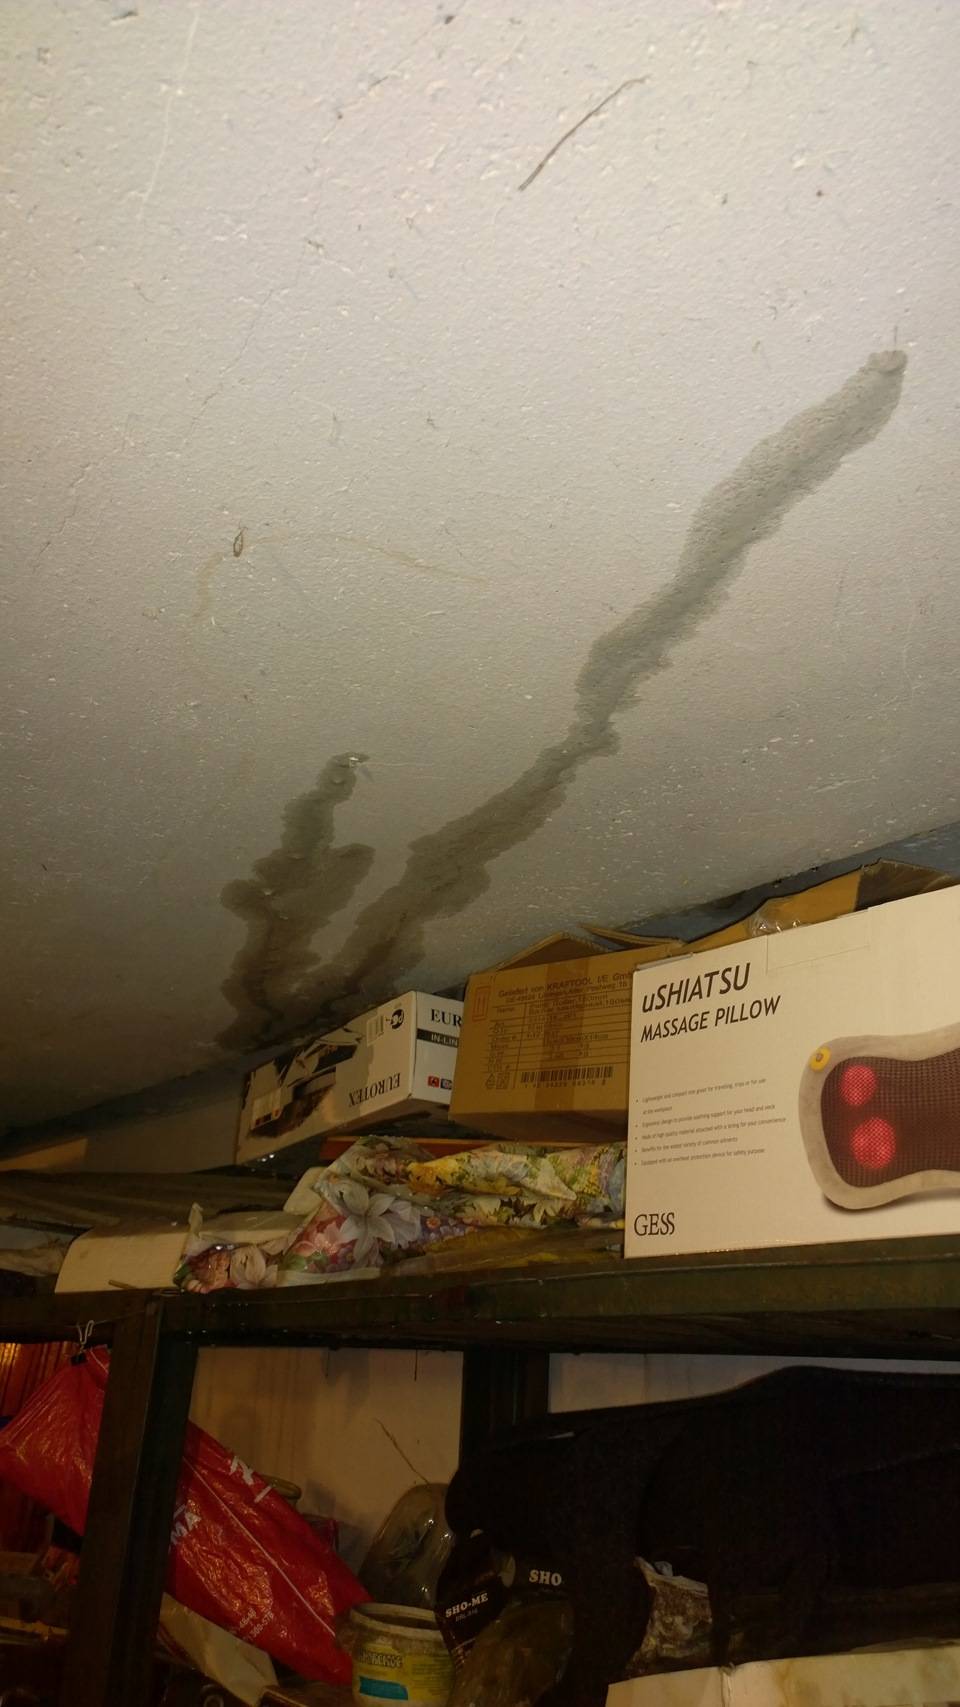 Как правильно утеплить потолок и крышу в гараже изнутри